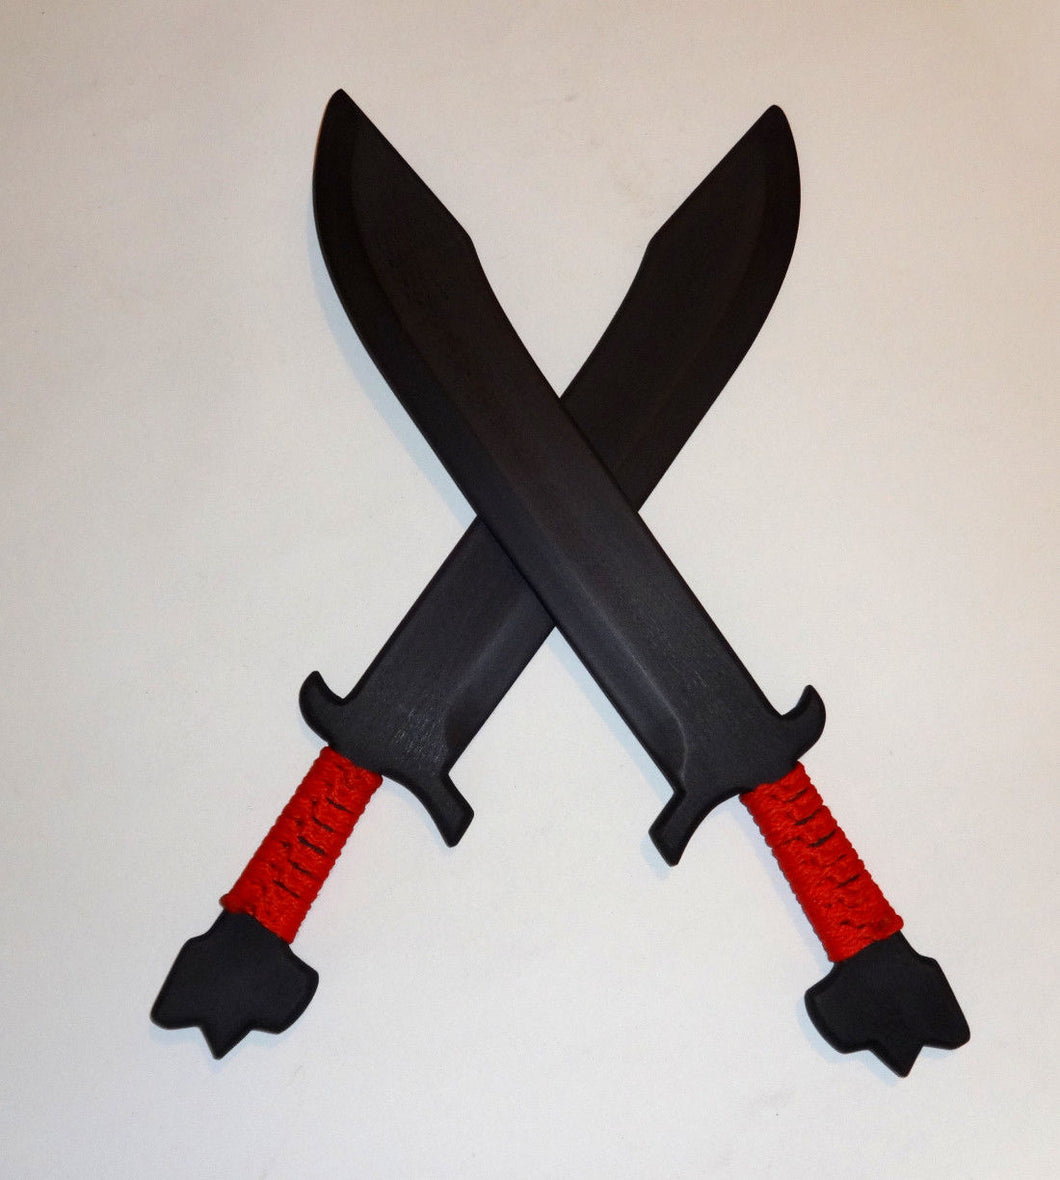 Training Katipunan Pair Practice Arnis Swords Polypropylene Double Kali Martial Arts Blade